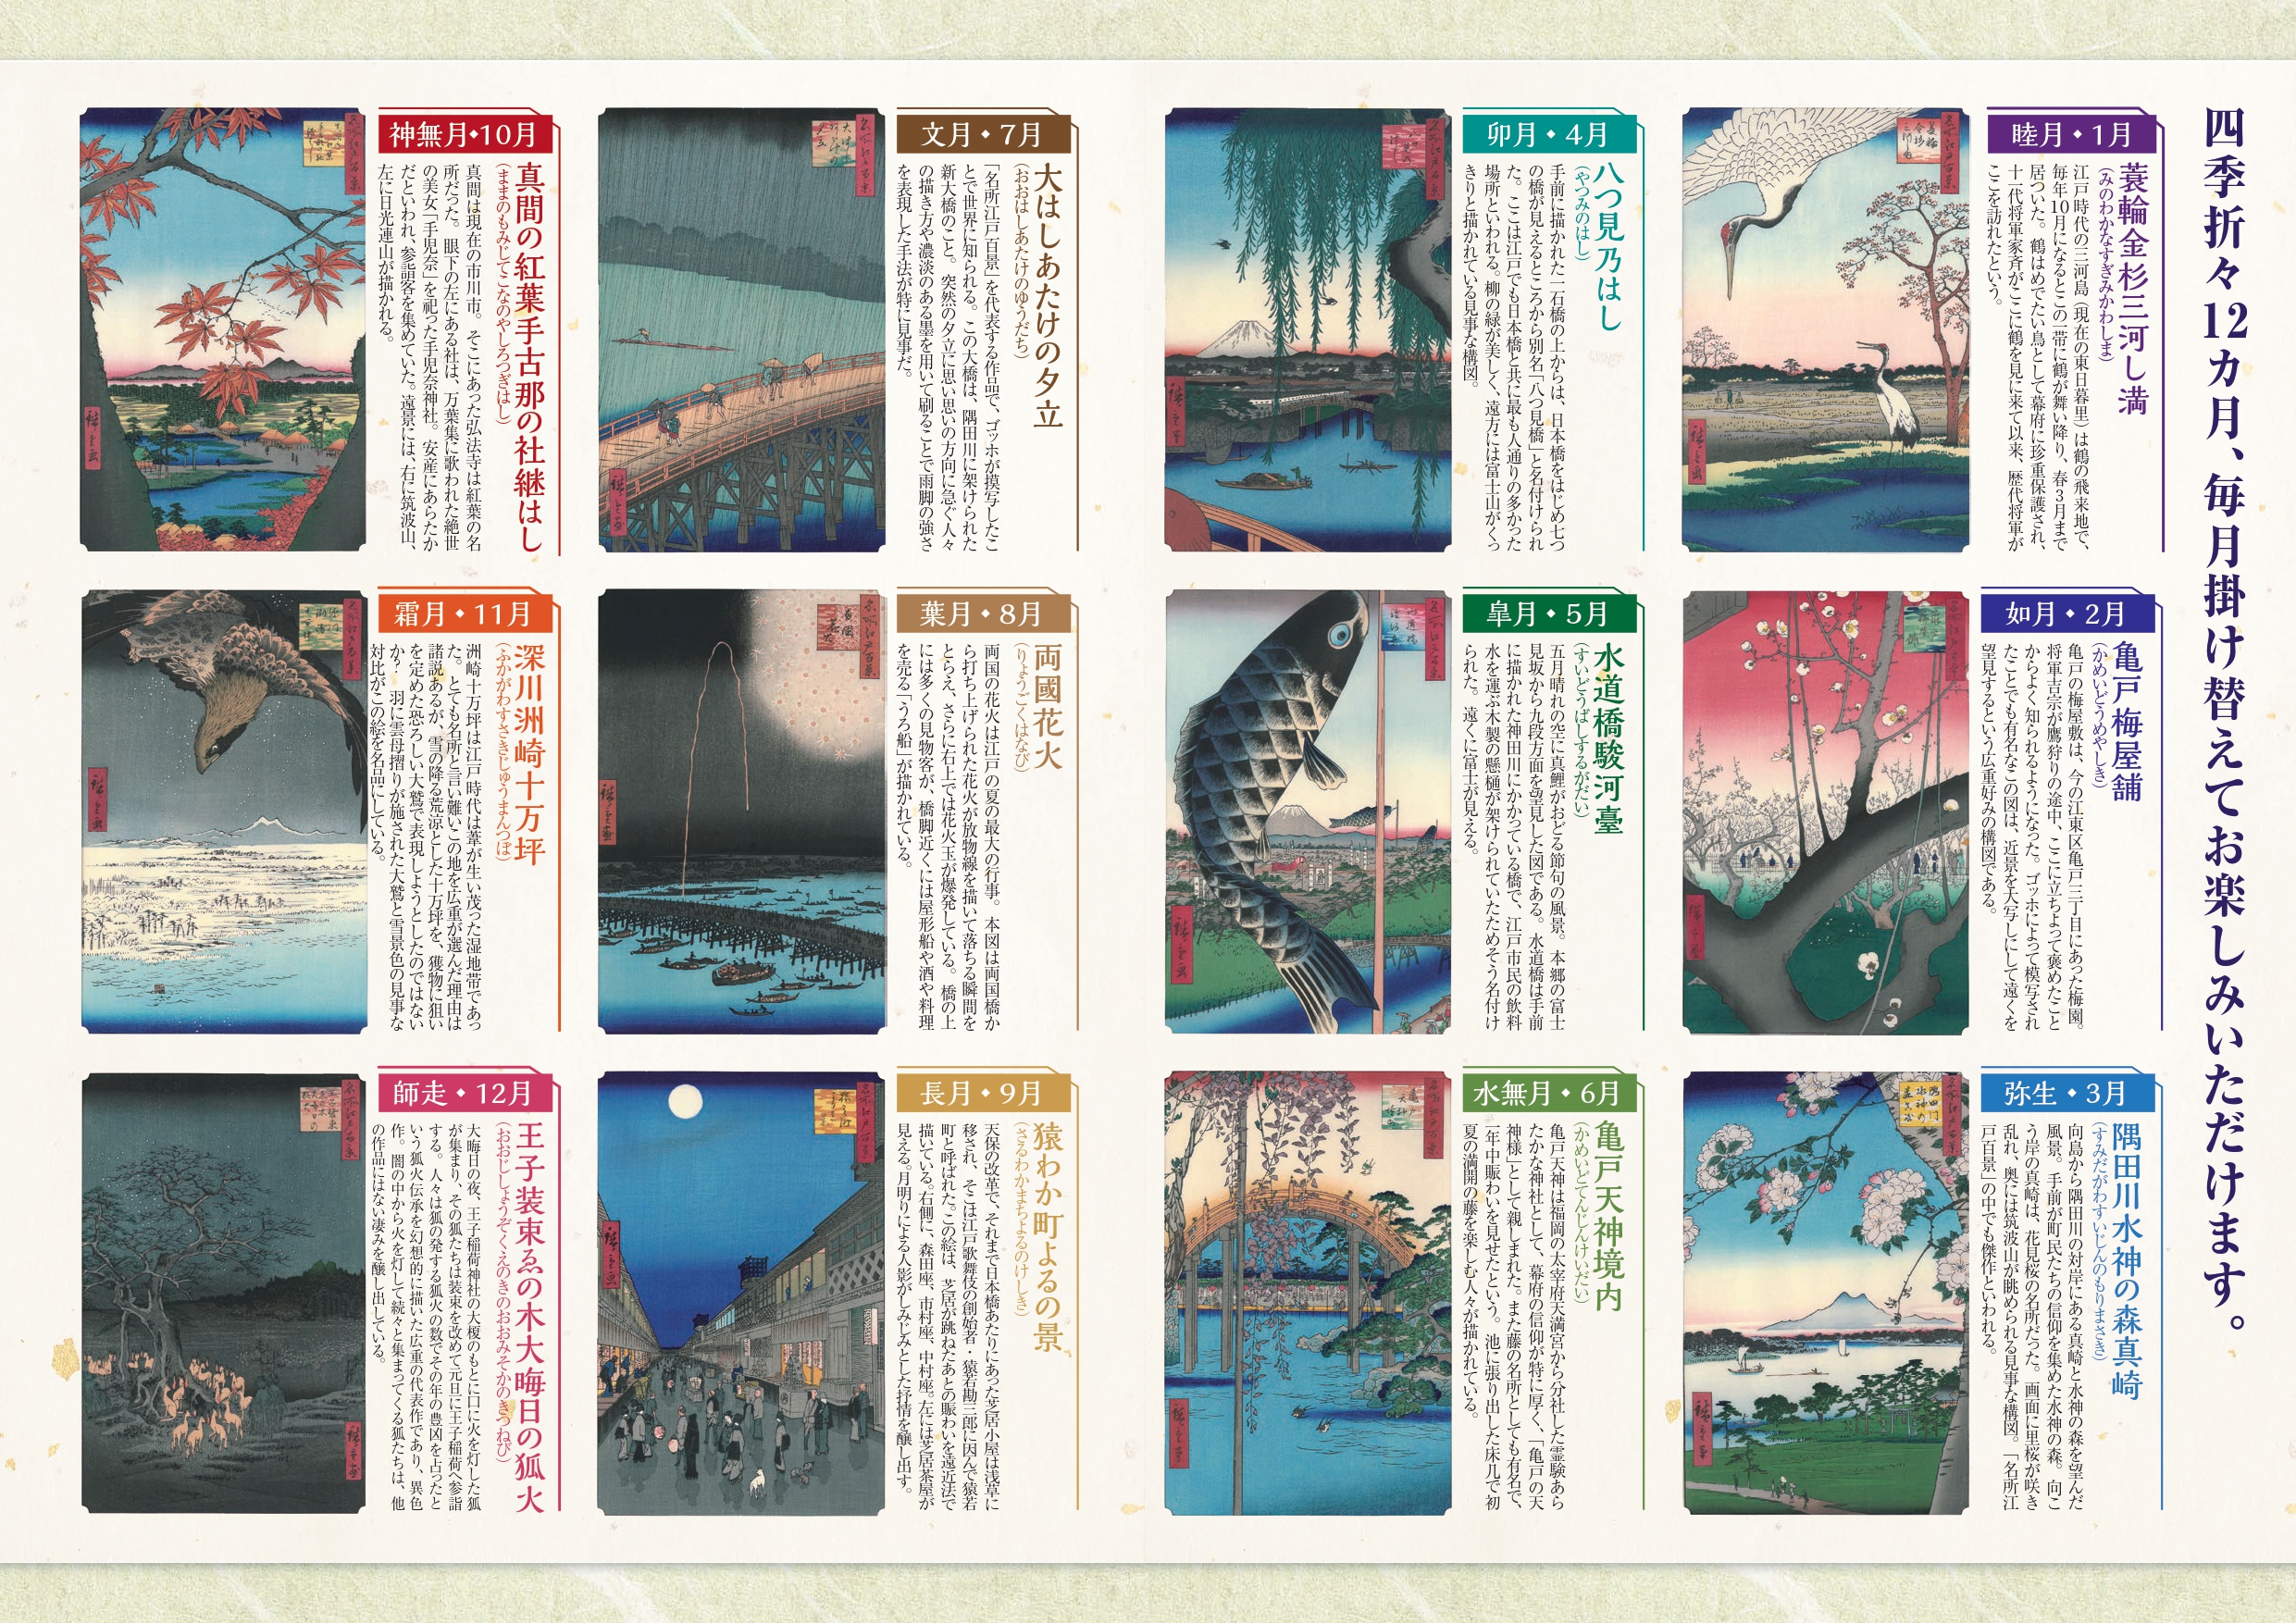 2月20日、当社の新商品「名所江戸百景『12カ月の風景』」の広告を日本経済新聞に掲載しました。(パンフレットをご請求ください)